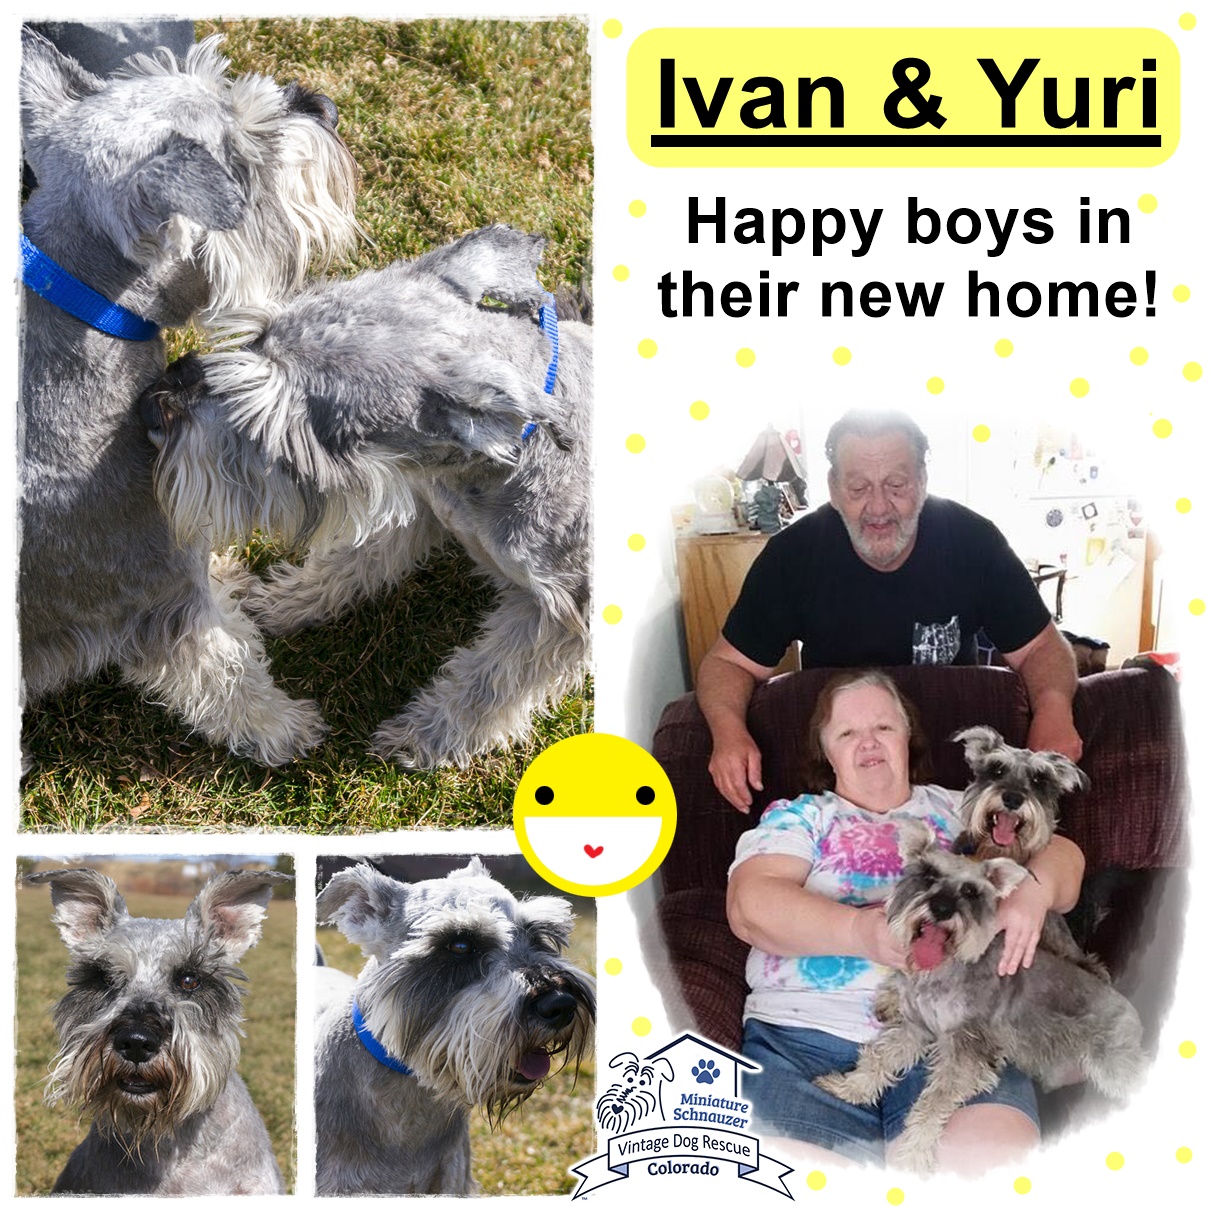 Yuri & Ivan (Mini Schnauzers) adopted